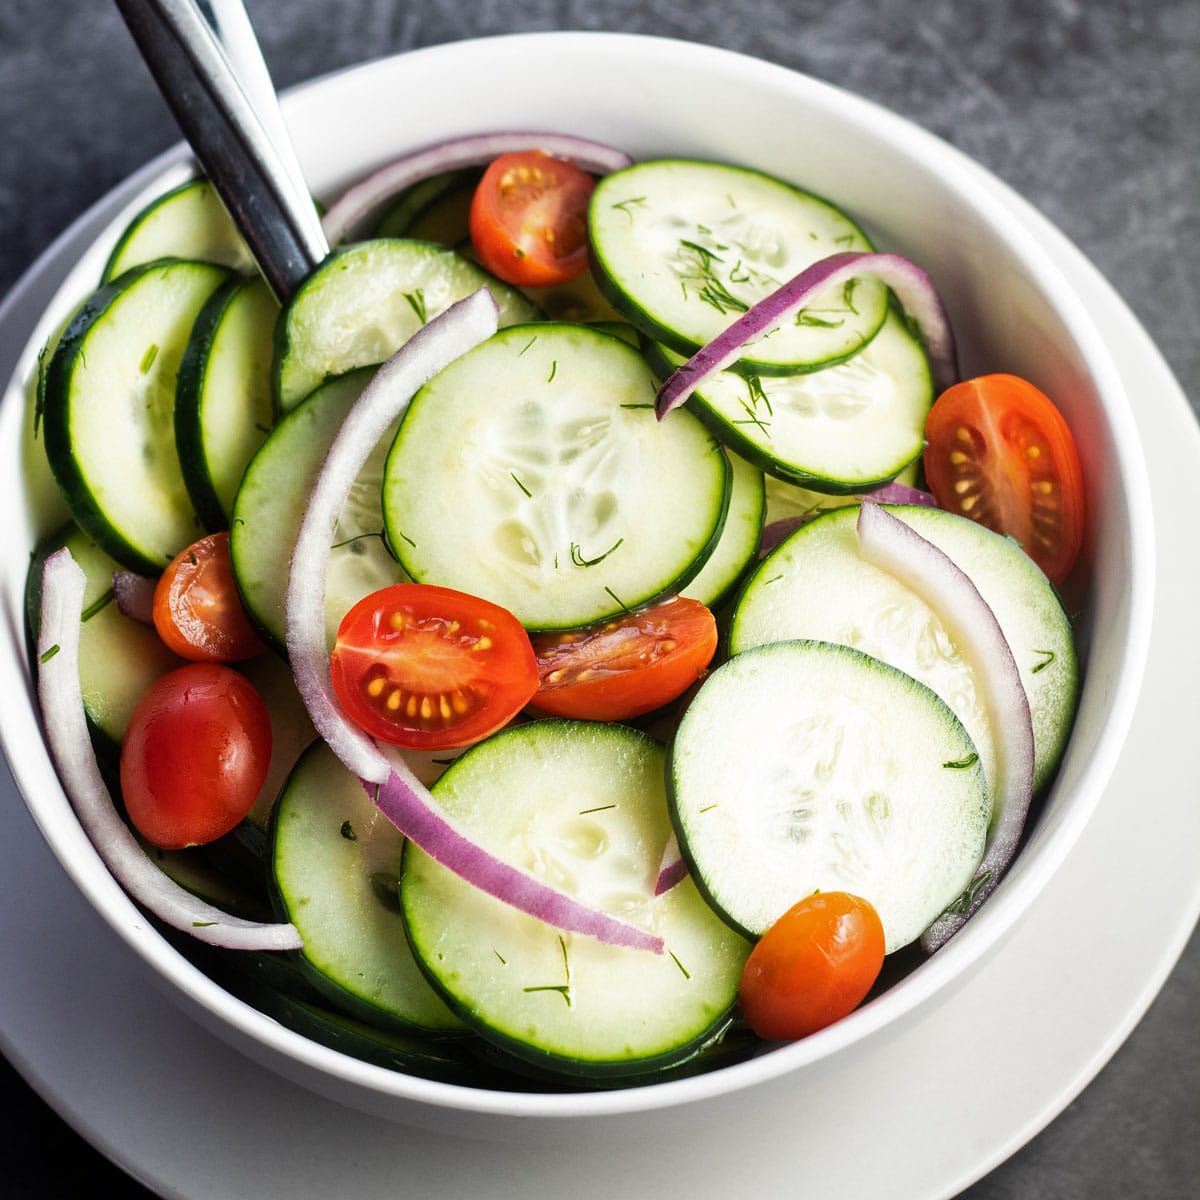 Salad cuka mentimun yang luar biasa lezat dengan bawang merah, tomat ceri, dan adas segar.